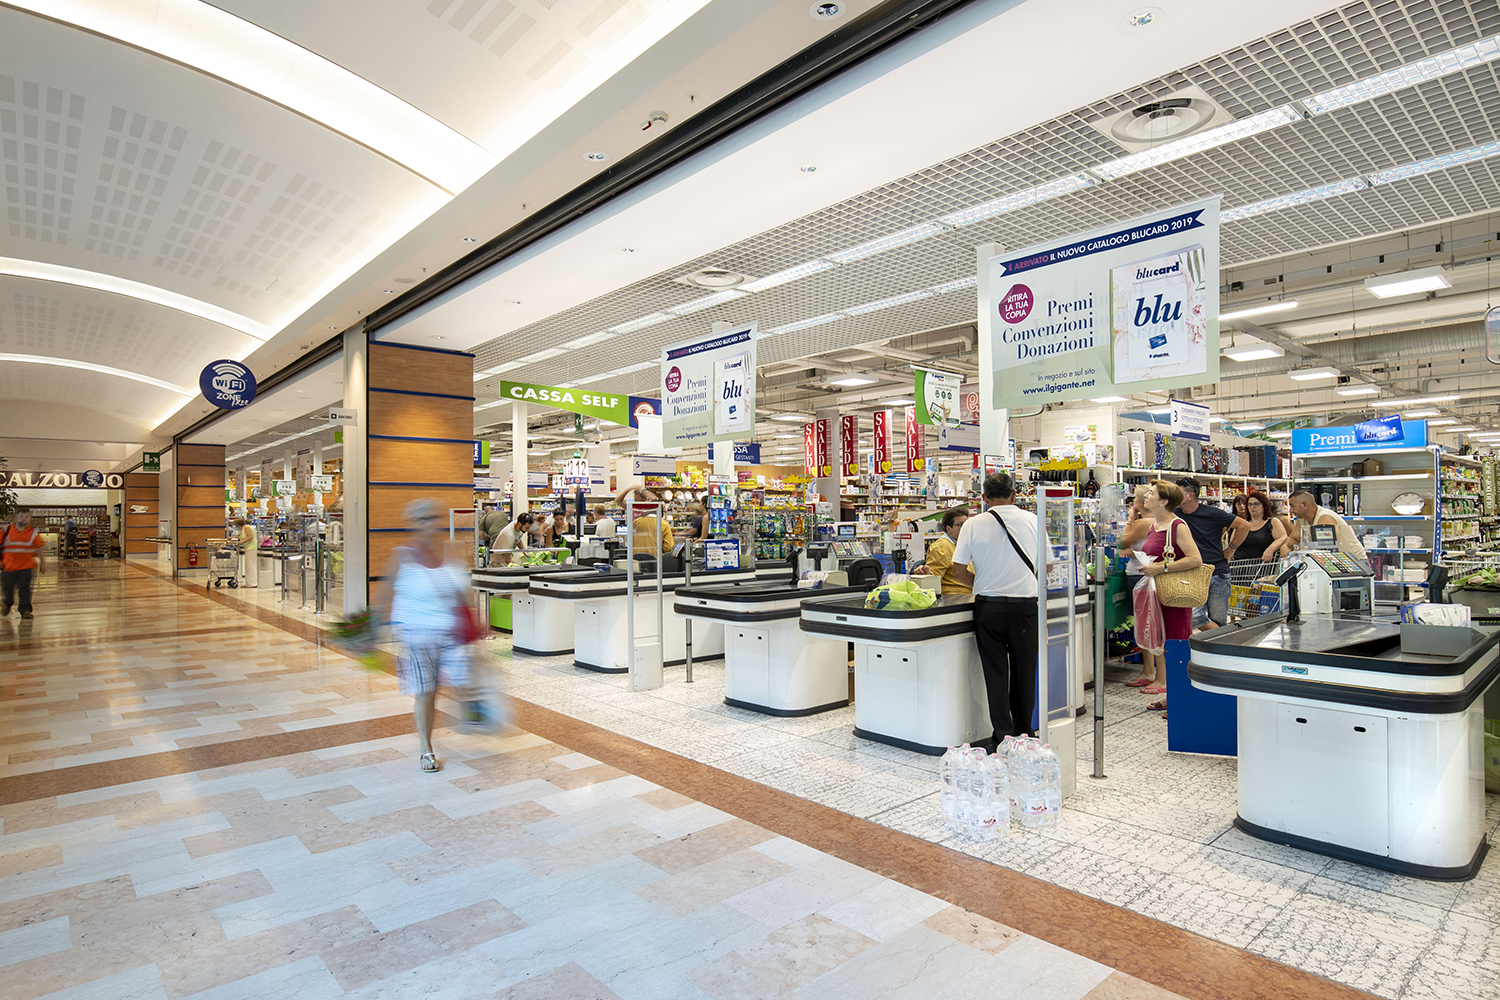 il gigante centri commerciali somma casse supermercato